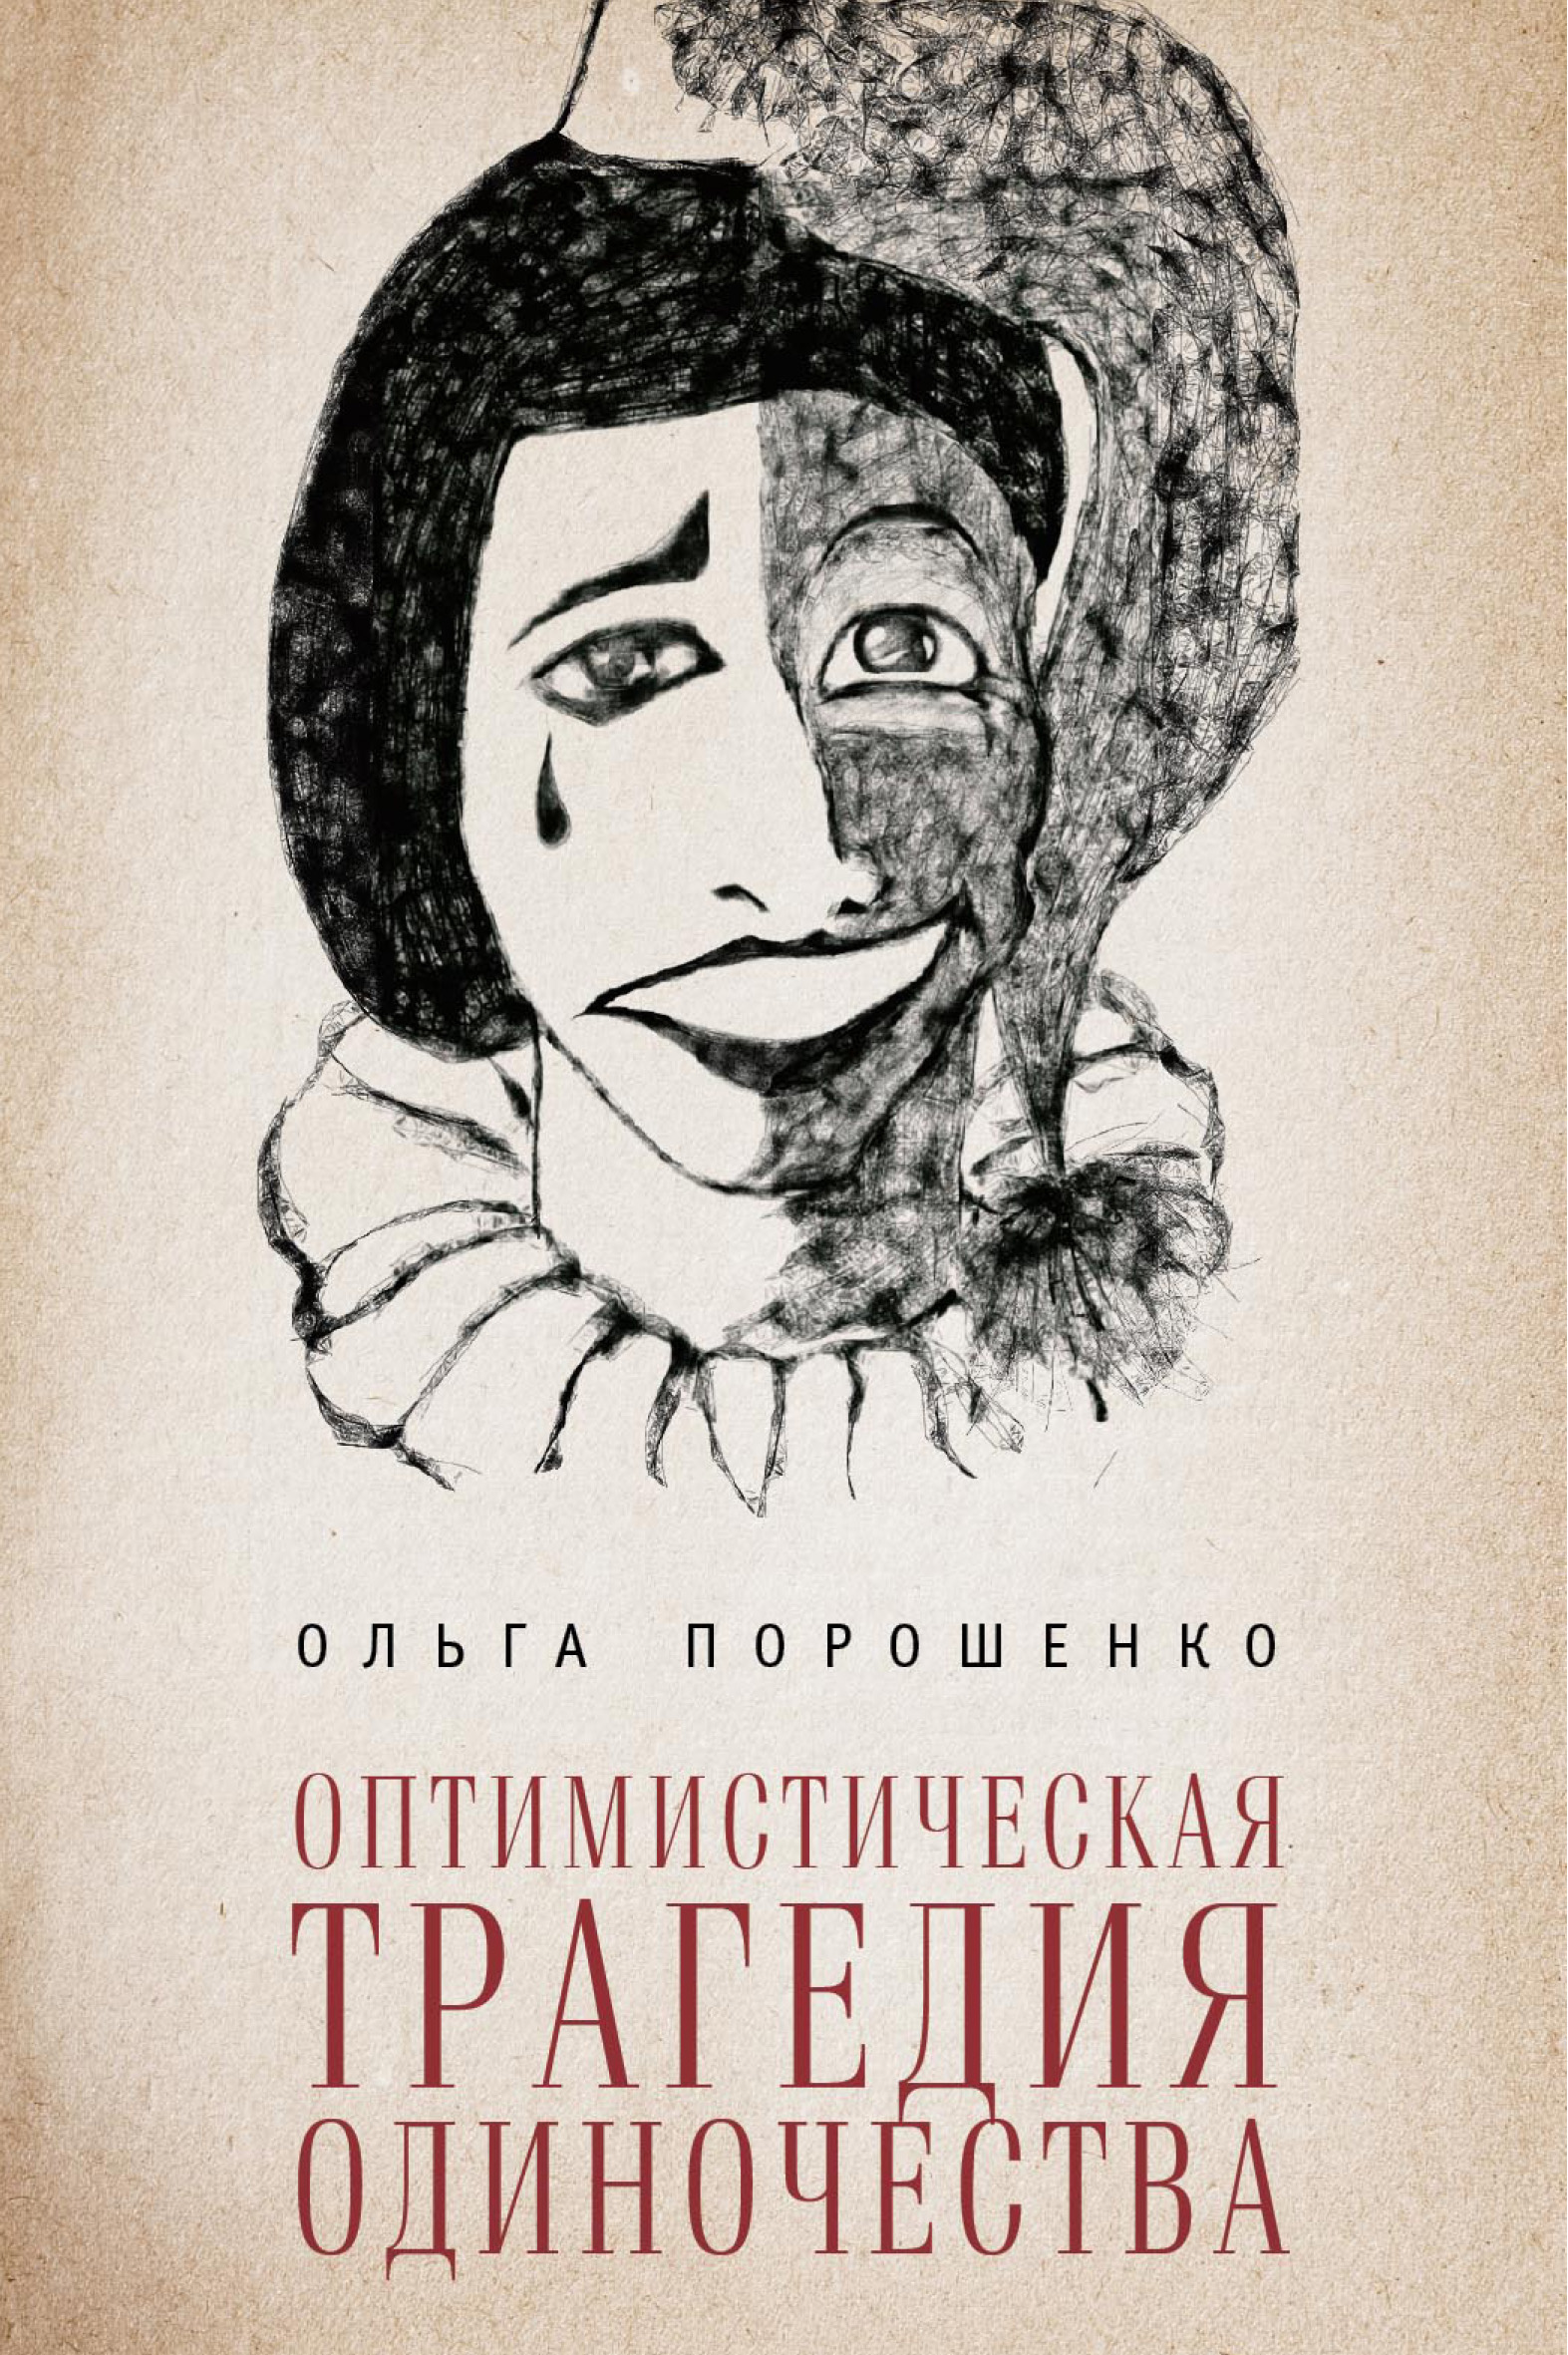 Книга Оптимистическая трагедия одиночества из серии , созданная Ольга Порошенко, может относится к жанру Культурология, Философия, Социальная психология. Стоимость электронной книги Оптимистическая трагедия одиночества с идентификатором 11965067 составляет 149.00 руб.